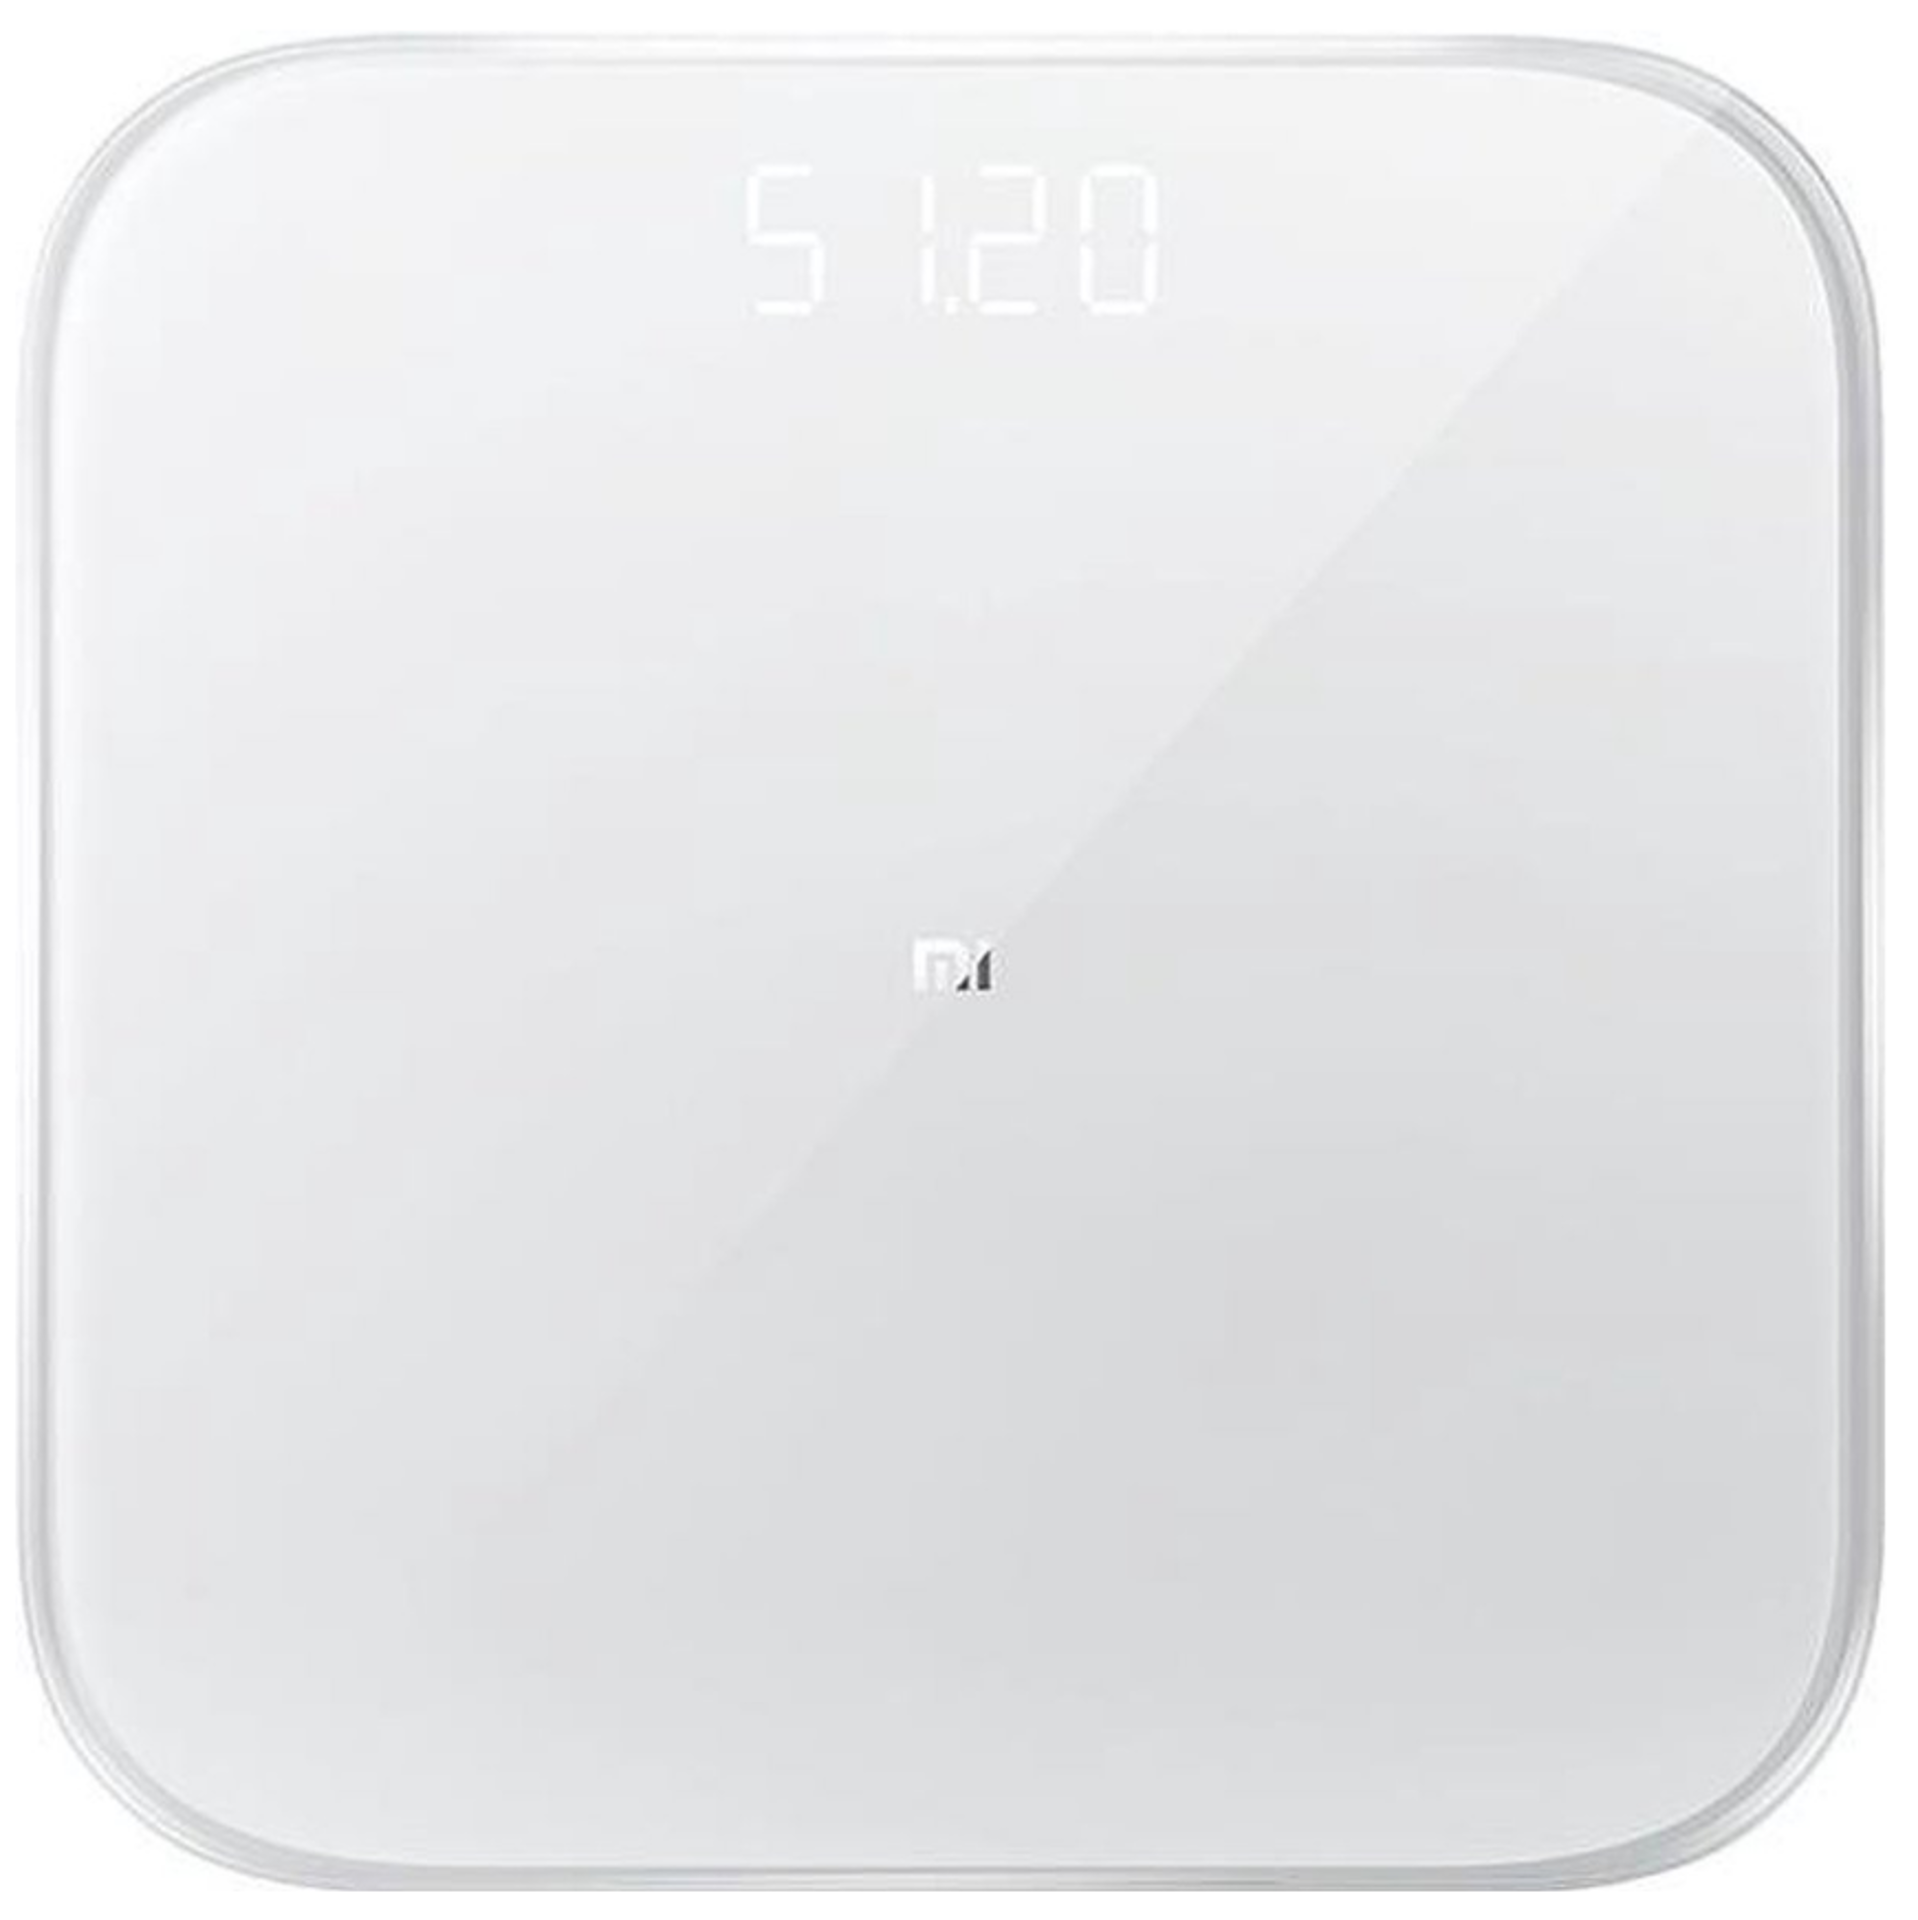 Xiaomi Mi Smart Scale 2 White